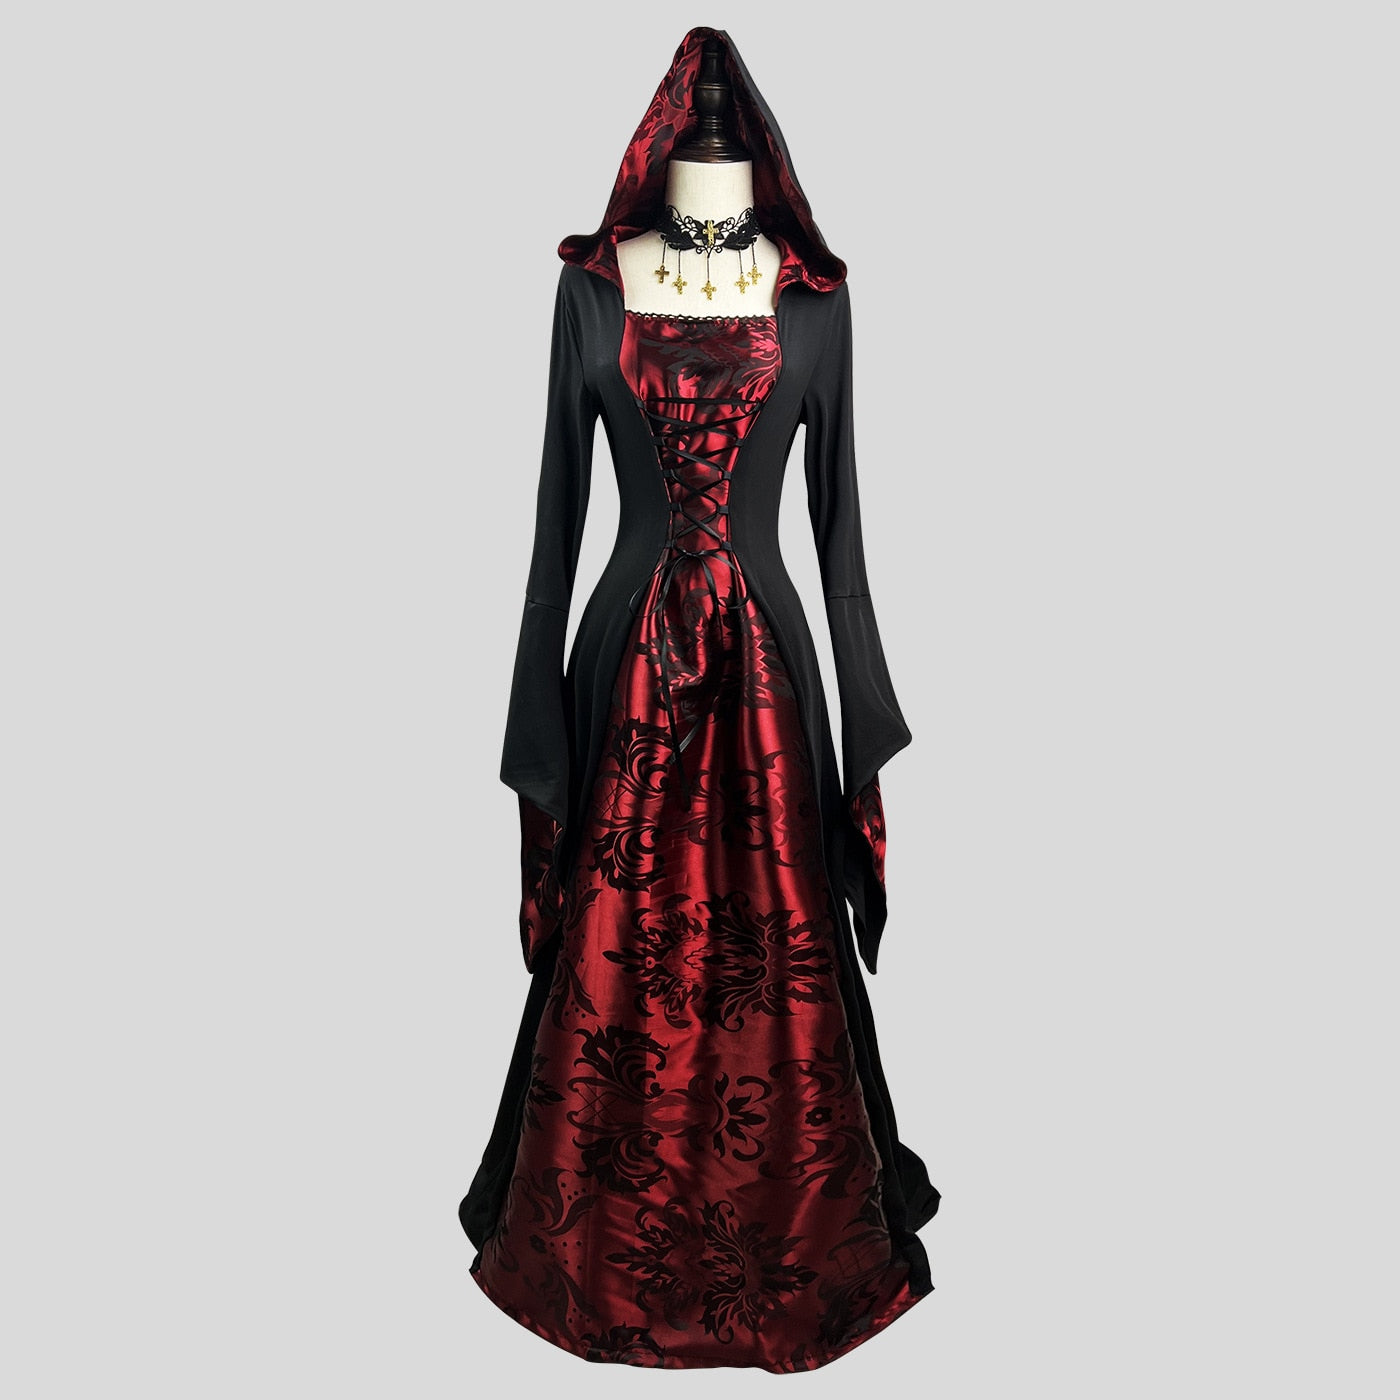 Vampire Halloween Costume